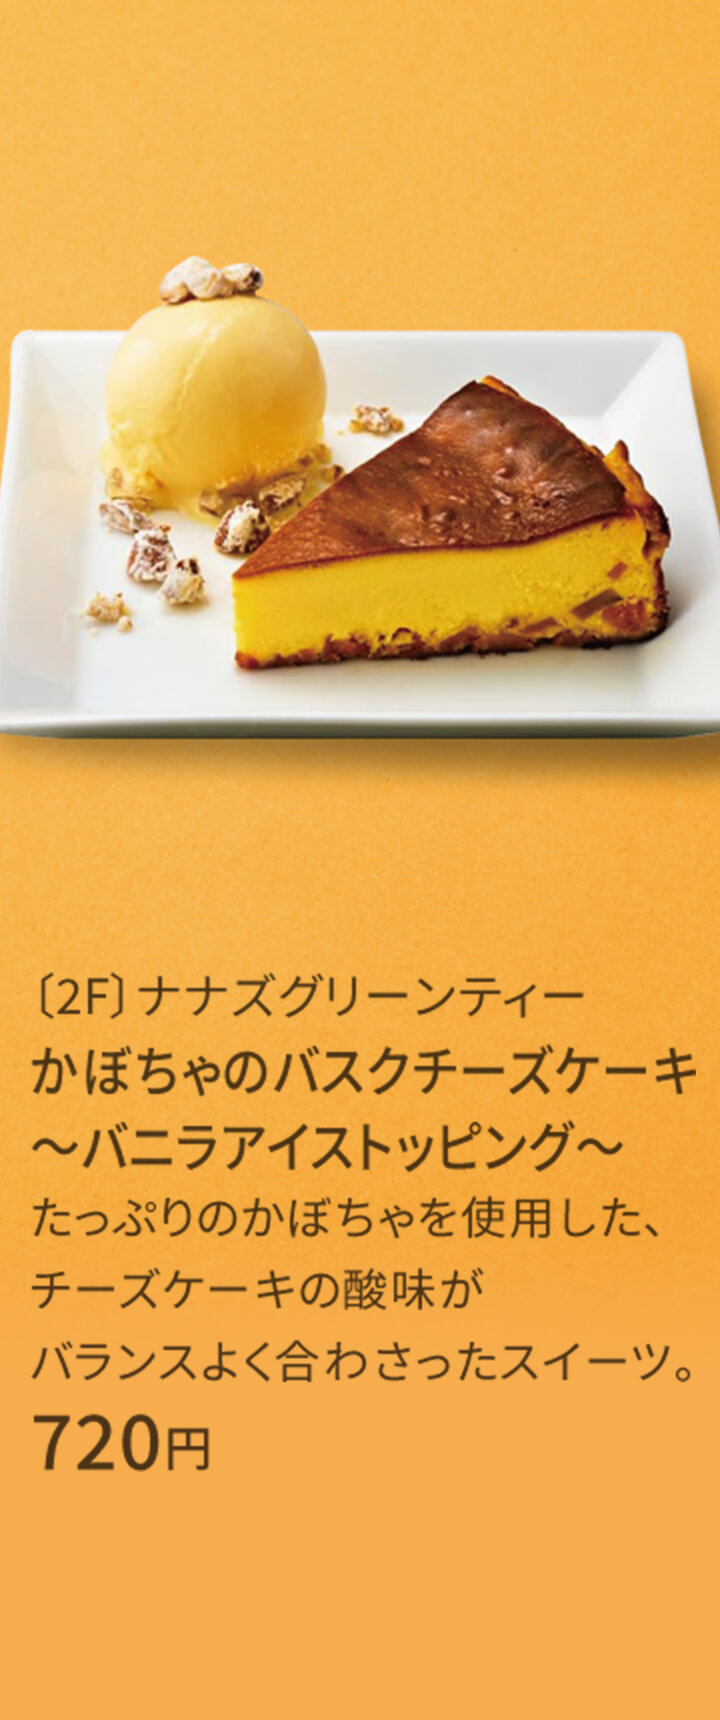 〔2F〕ナナズグリーンティー かぼちゃのバスクチーズケーキ ～バニラアイストッピング～ たっぷりのかぼちゃを使用した、チーズケーキの酸味がバランスよく合わさったスイーツ。 720円